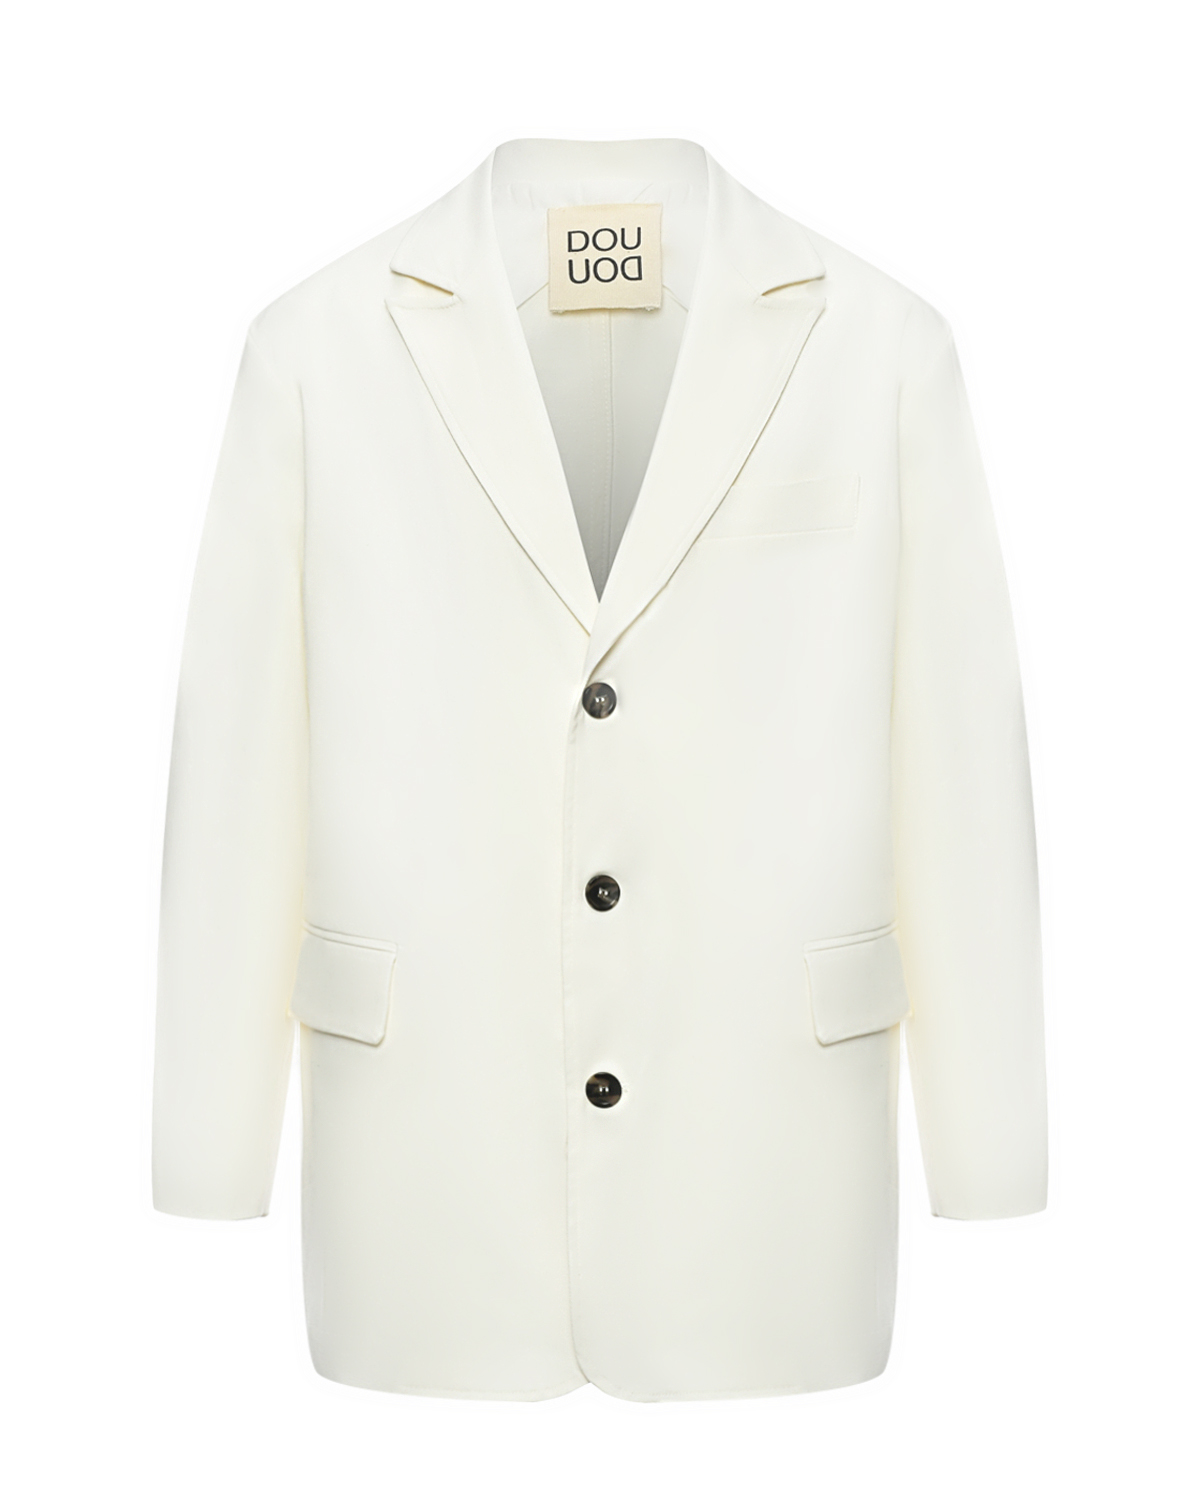 Однобортный пиджак, белый DOUUOD пиджак оверсайз белый glvr xl